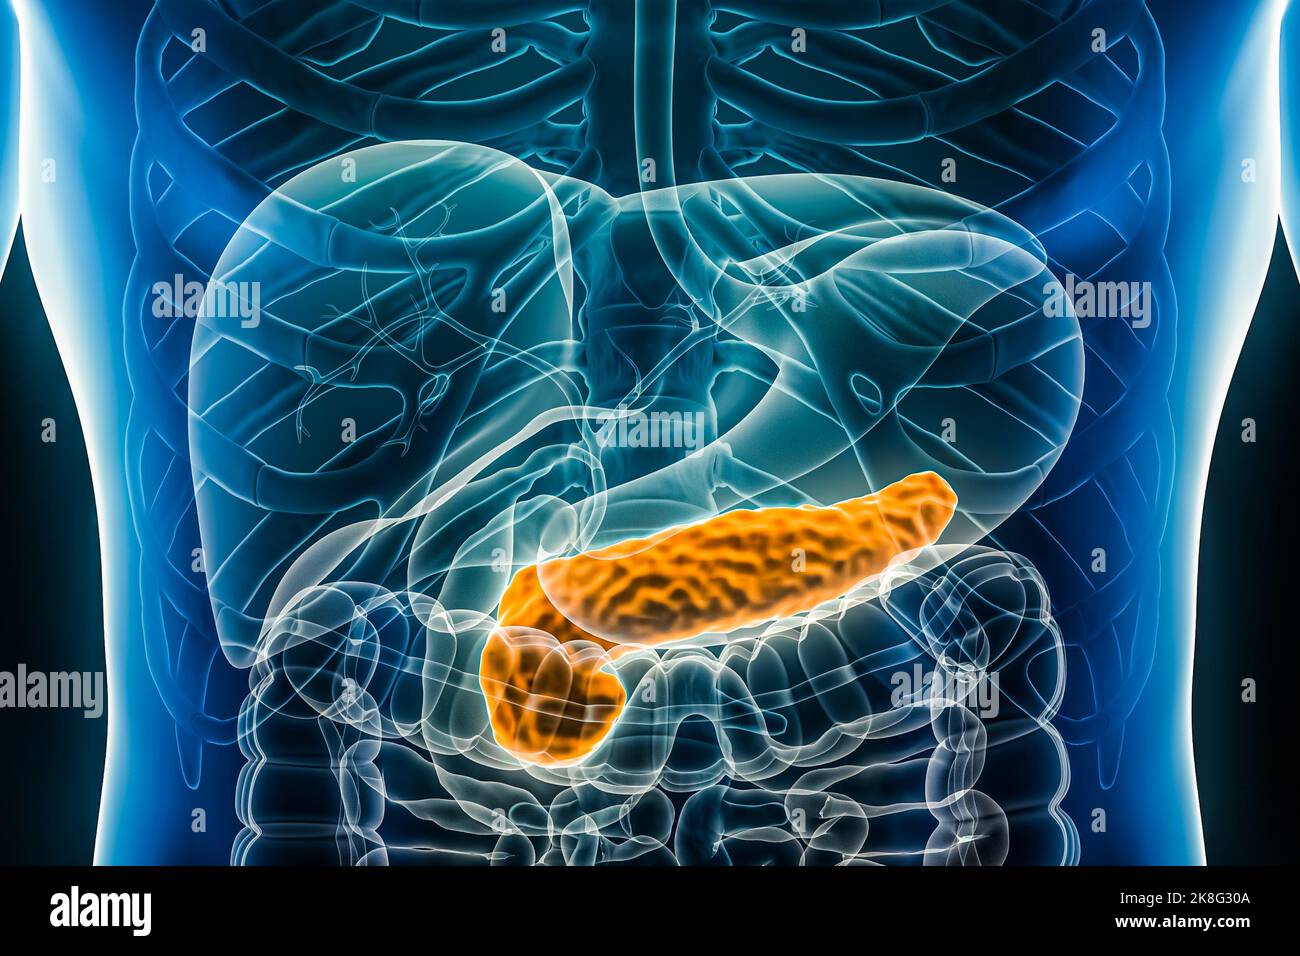 Pankreas 3D Rendering Illustration anterior oder Front view close-up. Organ des menschlichen Verdauungssystems. Anatomie, Medizin, Biologie, Wissenschaft, Gesundheit Stockfoto